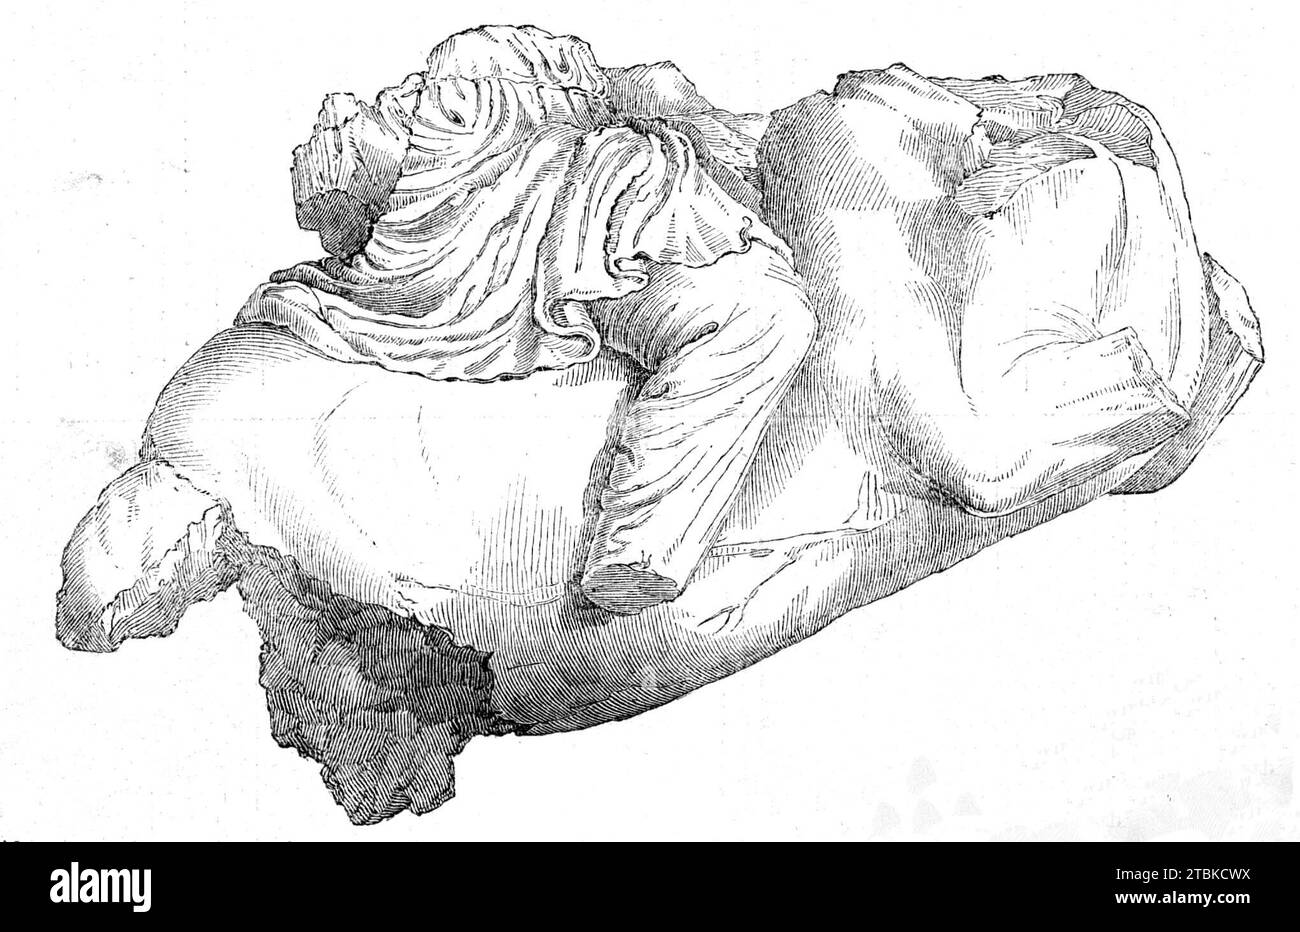 Überreste (angeblich) eines Amazon, 1861. '...fragment von einer Pferdefigur, von Mr. Newton als eine Amazonasfigur bezeichnet. Der Fahrer trägt eine kurze Tunika und Anaxyride. oder Hosen - ein Kostüm, das in griechischen Vasenmalereien normalerweise Amazonen gegeben wird... diese Figur ist ein bewundernswertes Exemplar der reinsten und informiertesten griechischen Kunst, mit Recht, in die gleiche Kategorie wie die Pedimentfiguren des Parthenon gestellt zu werden: "der Körper des Tieres, der durch das Zurückwerfen des Gewichts auf die Hallen in der Aufzucht verändert wurde, zeigt eine subtile Beobachtung der anatomischen Struktur Stockfoto